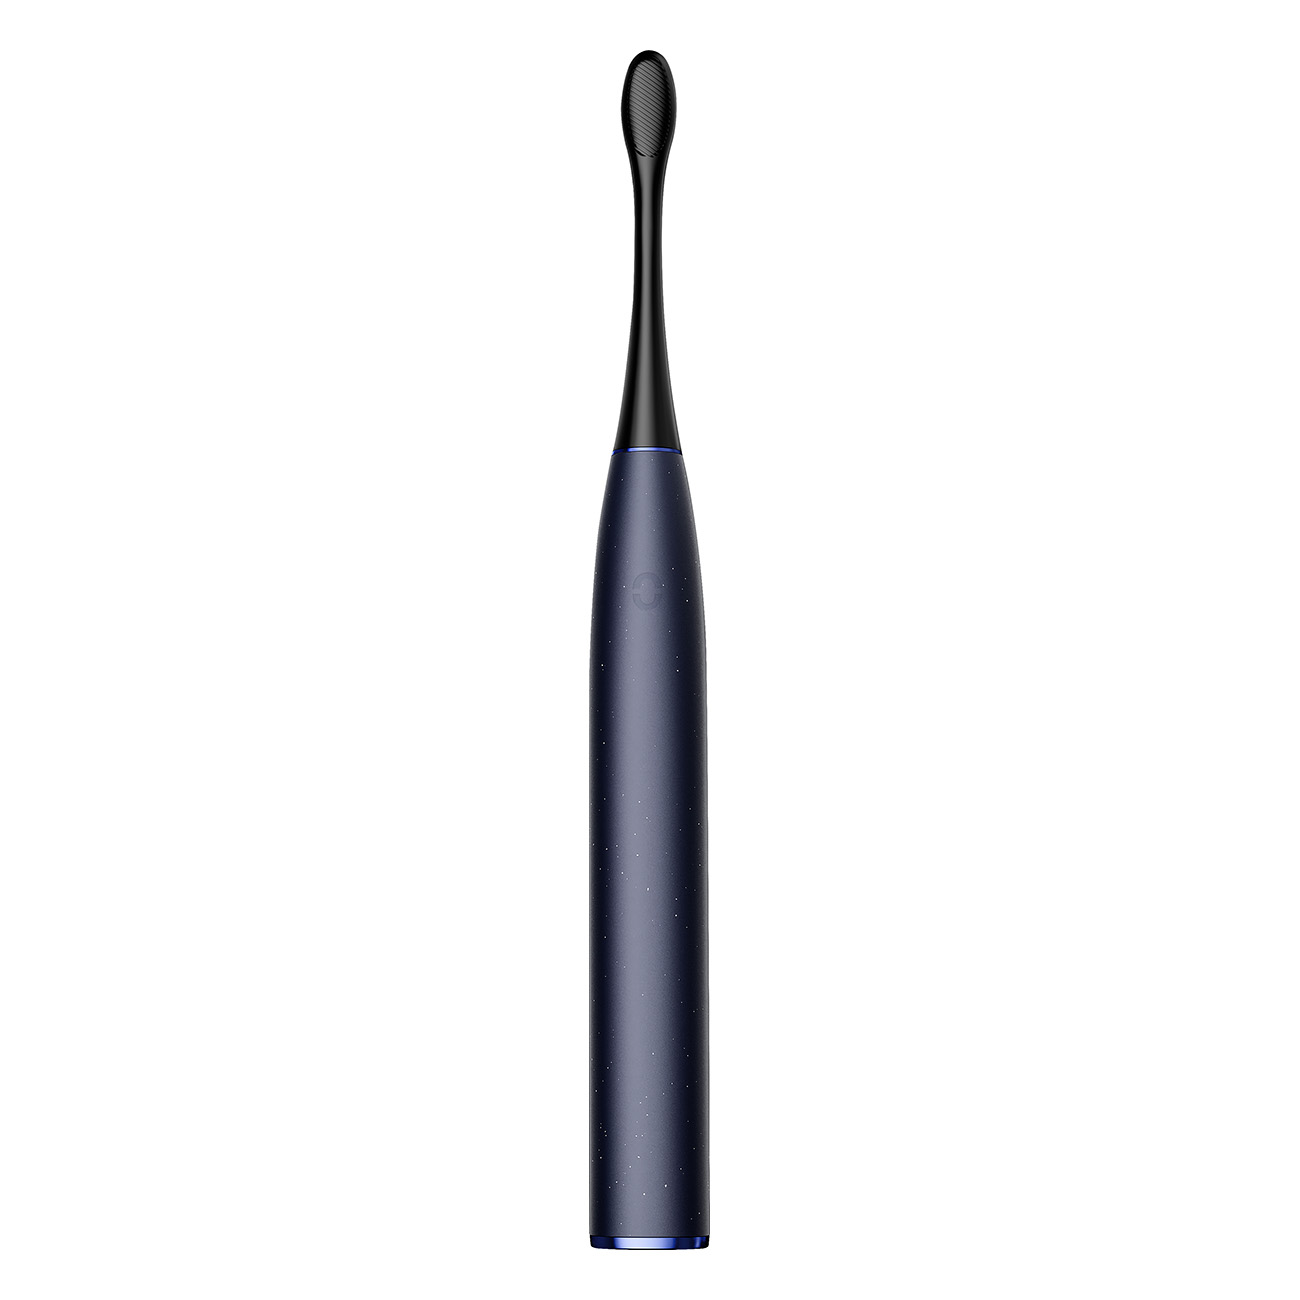 OCLEAN Pro Elektrische X Digital blau Toothbrush Zahnbürste Electric